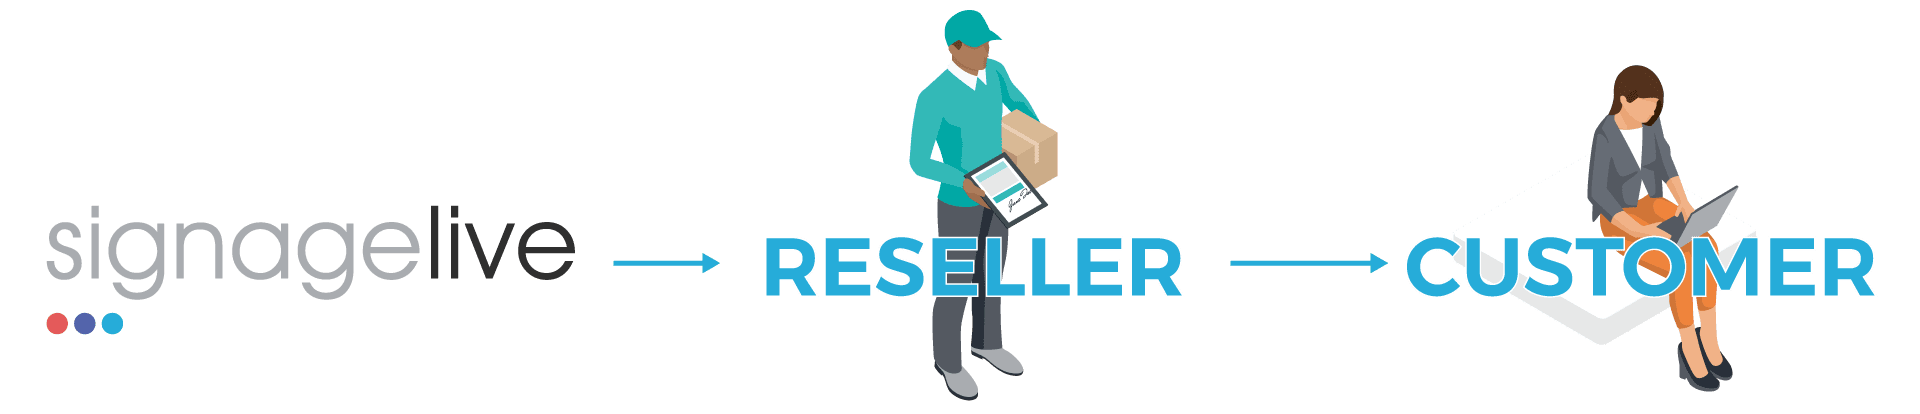 SL_reseller_customer